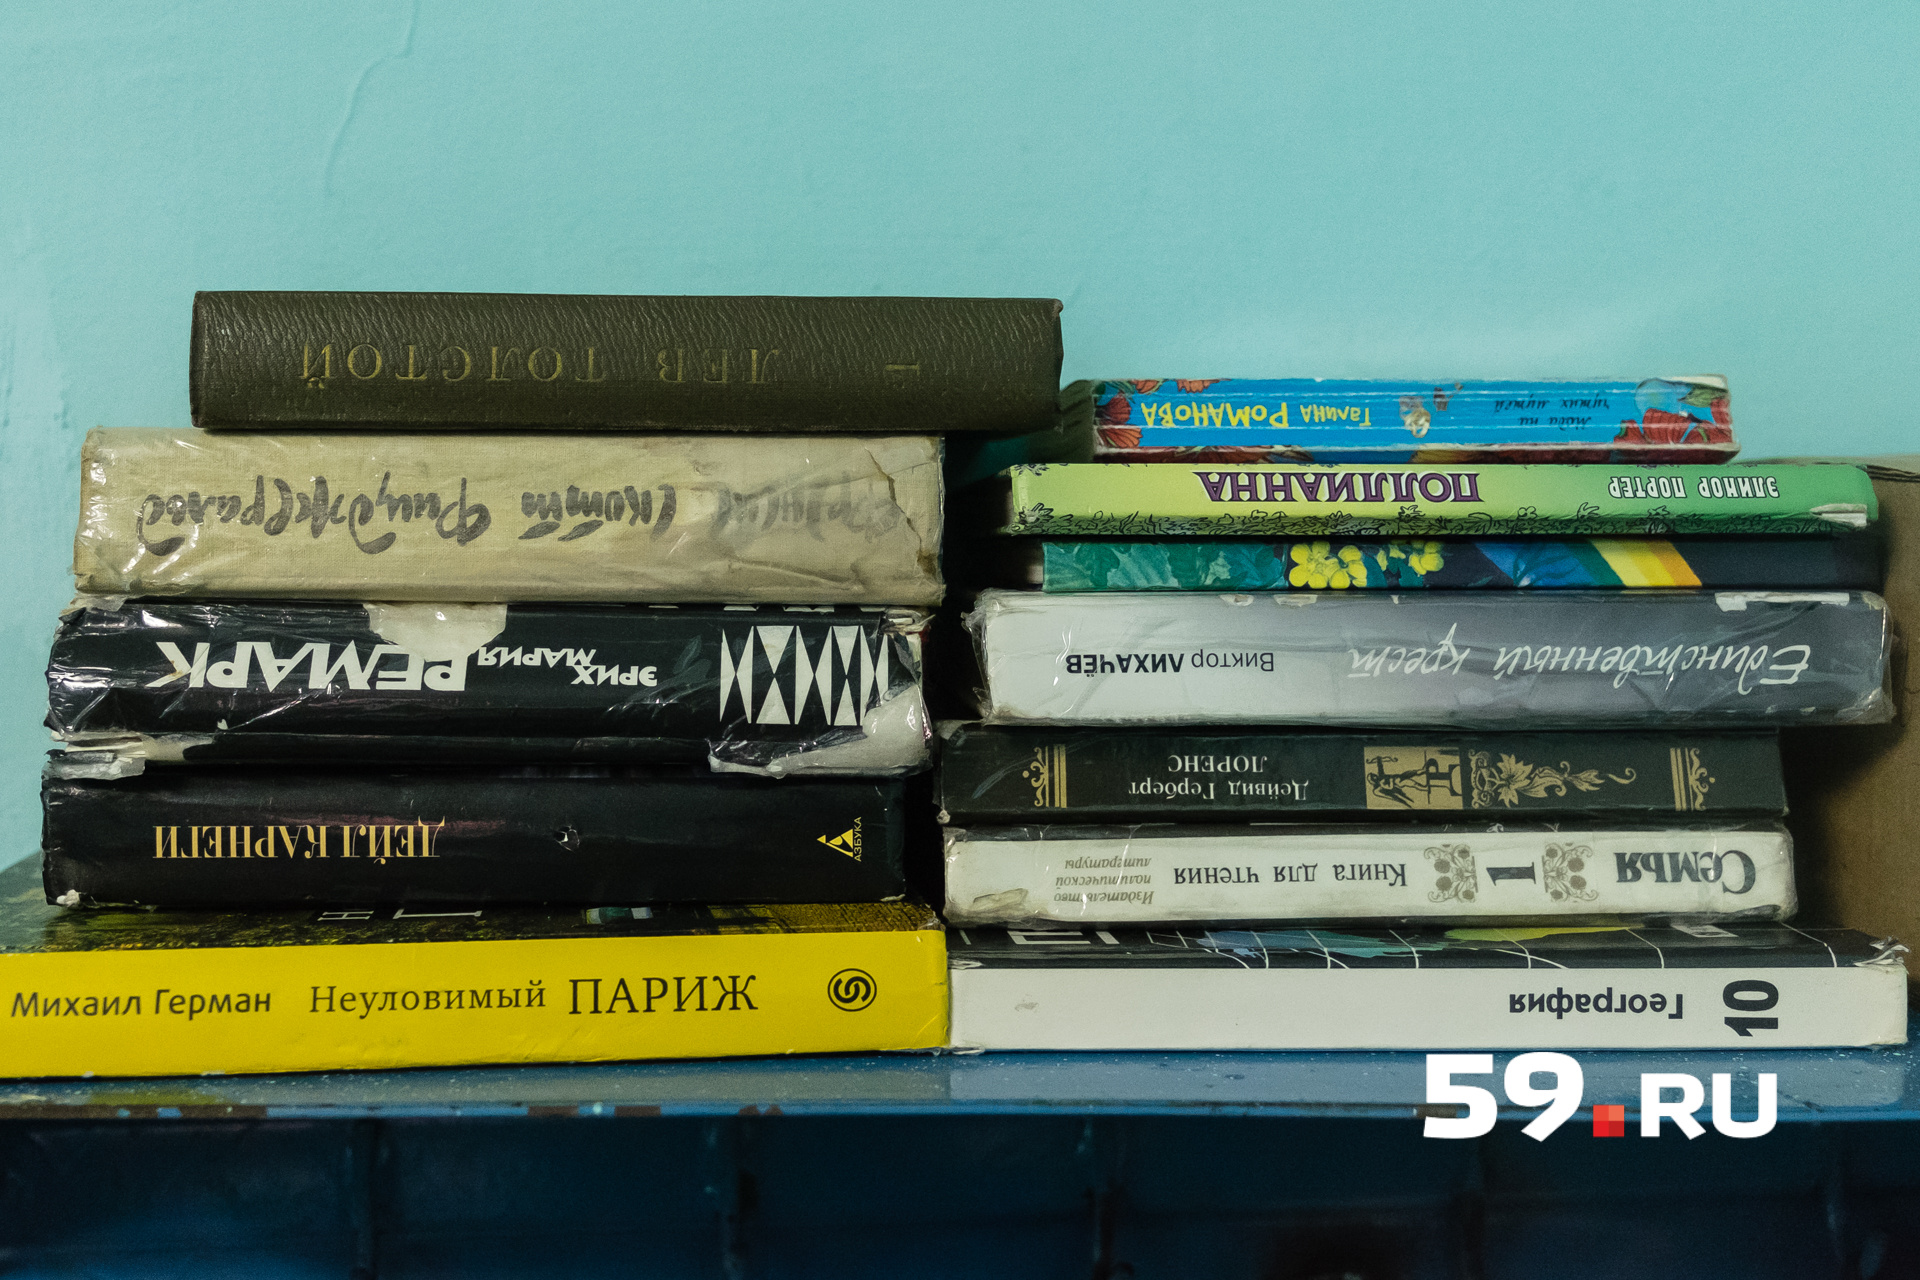 В камере полка с книгами из тюремной библиотеки: Толстой, Лихачев, «Полианна», учебник по географии за 10-й класс